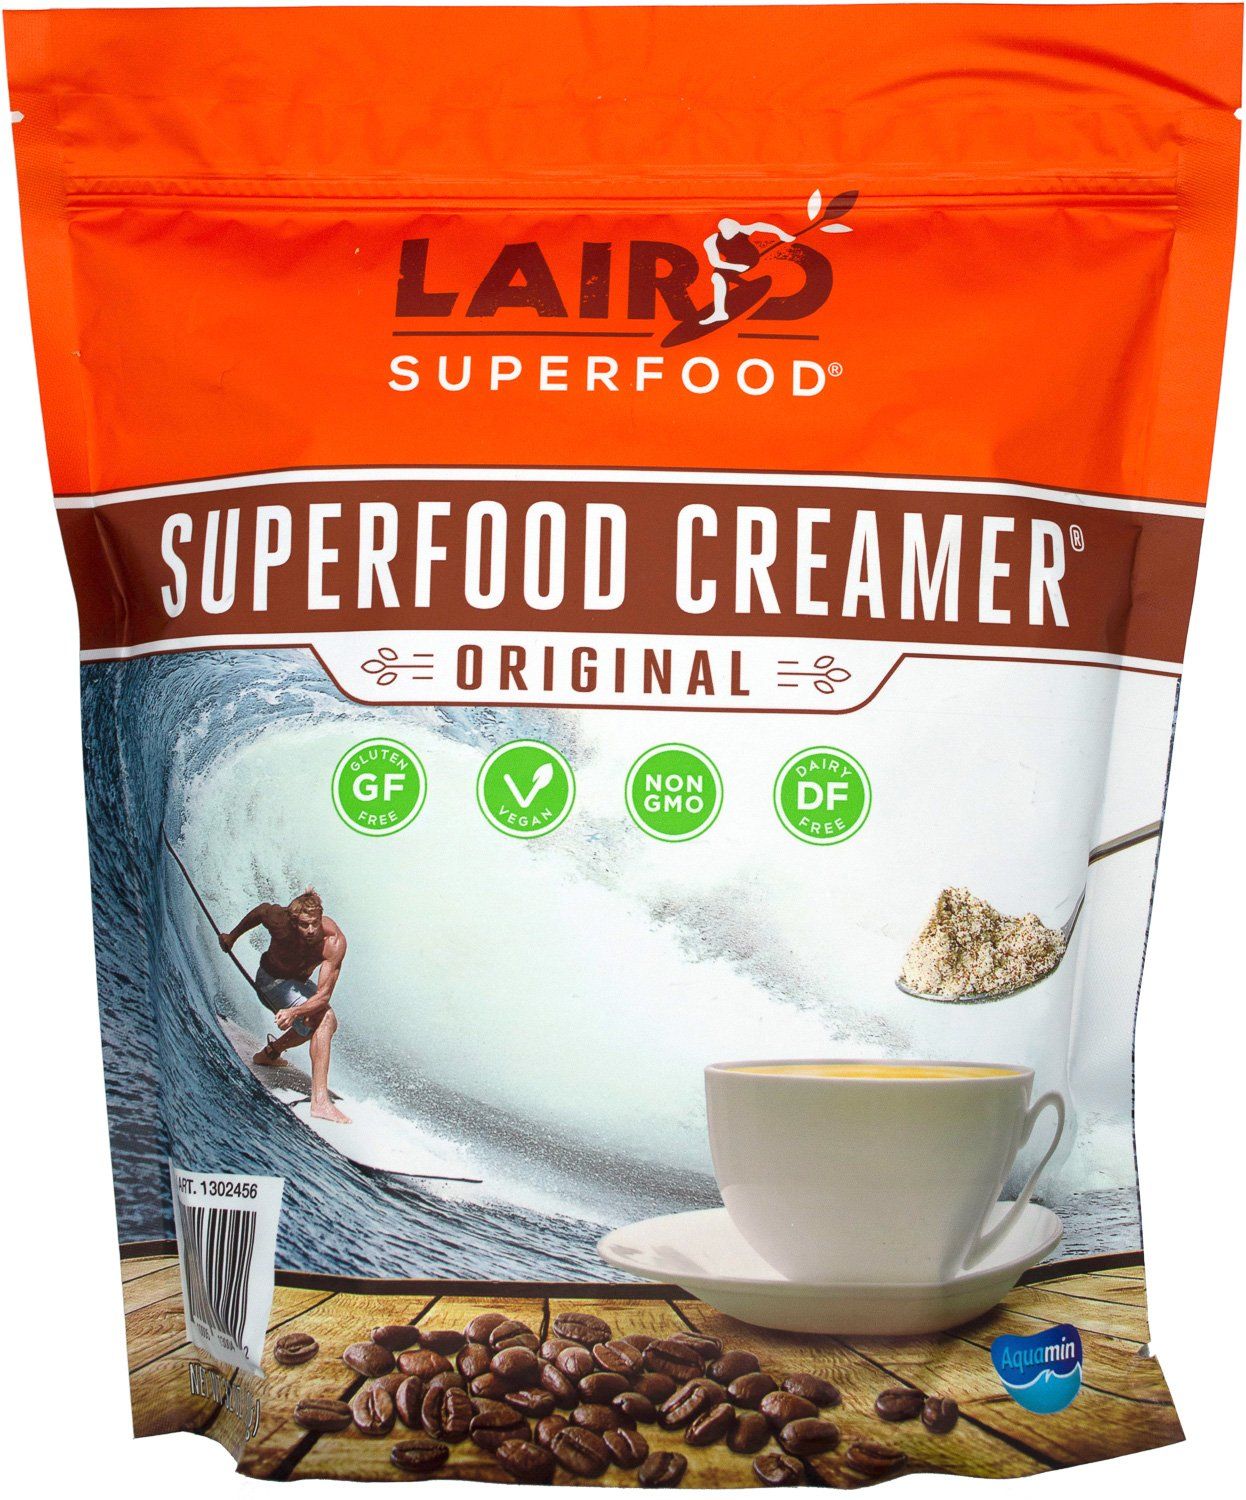 Laird Superfood Superfood Creamer Laird Superfood Original 32 Ounce 